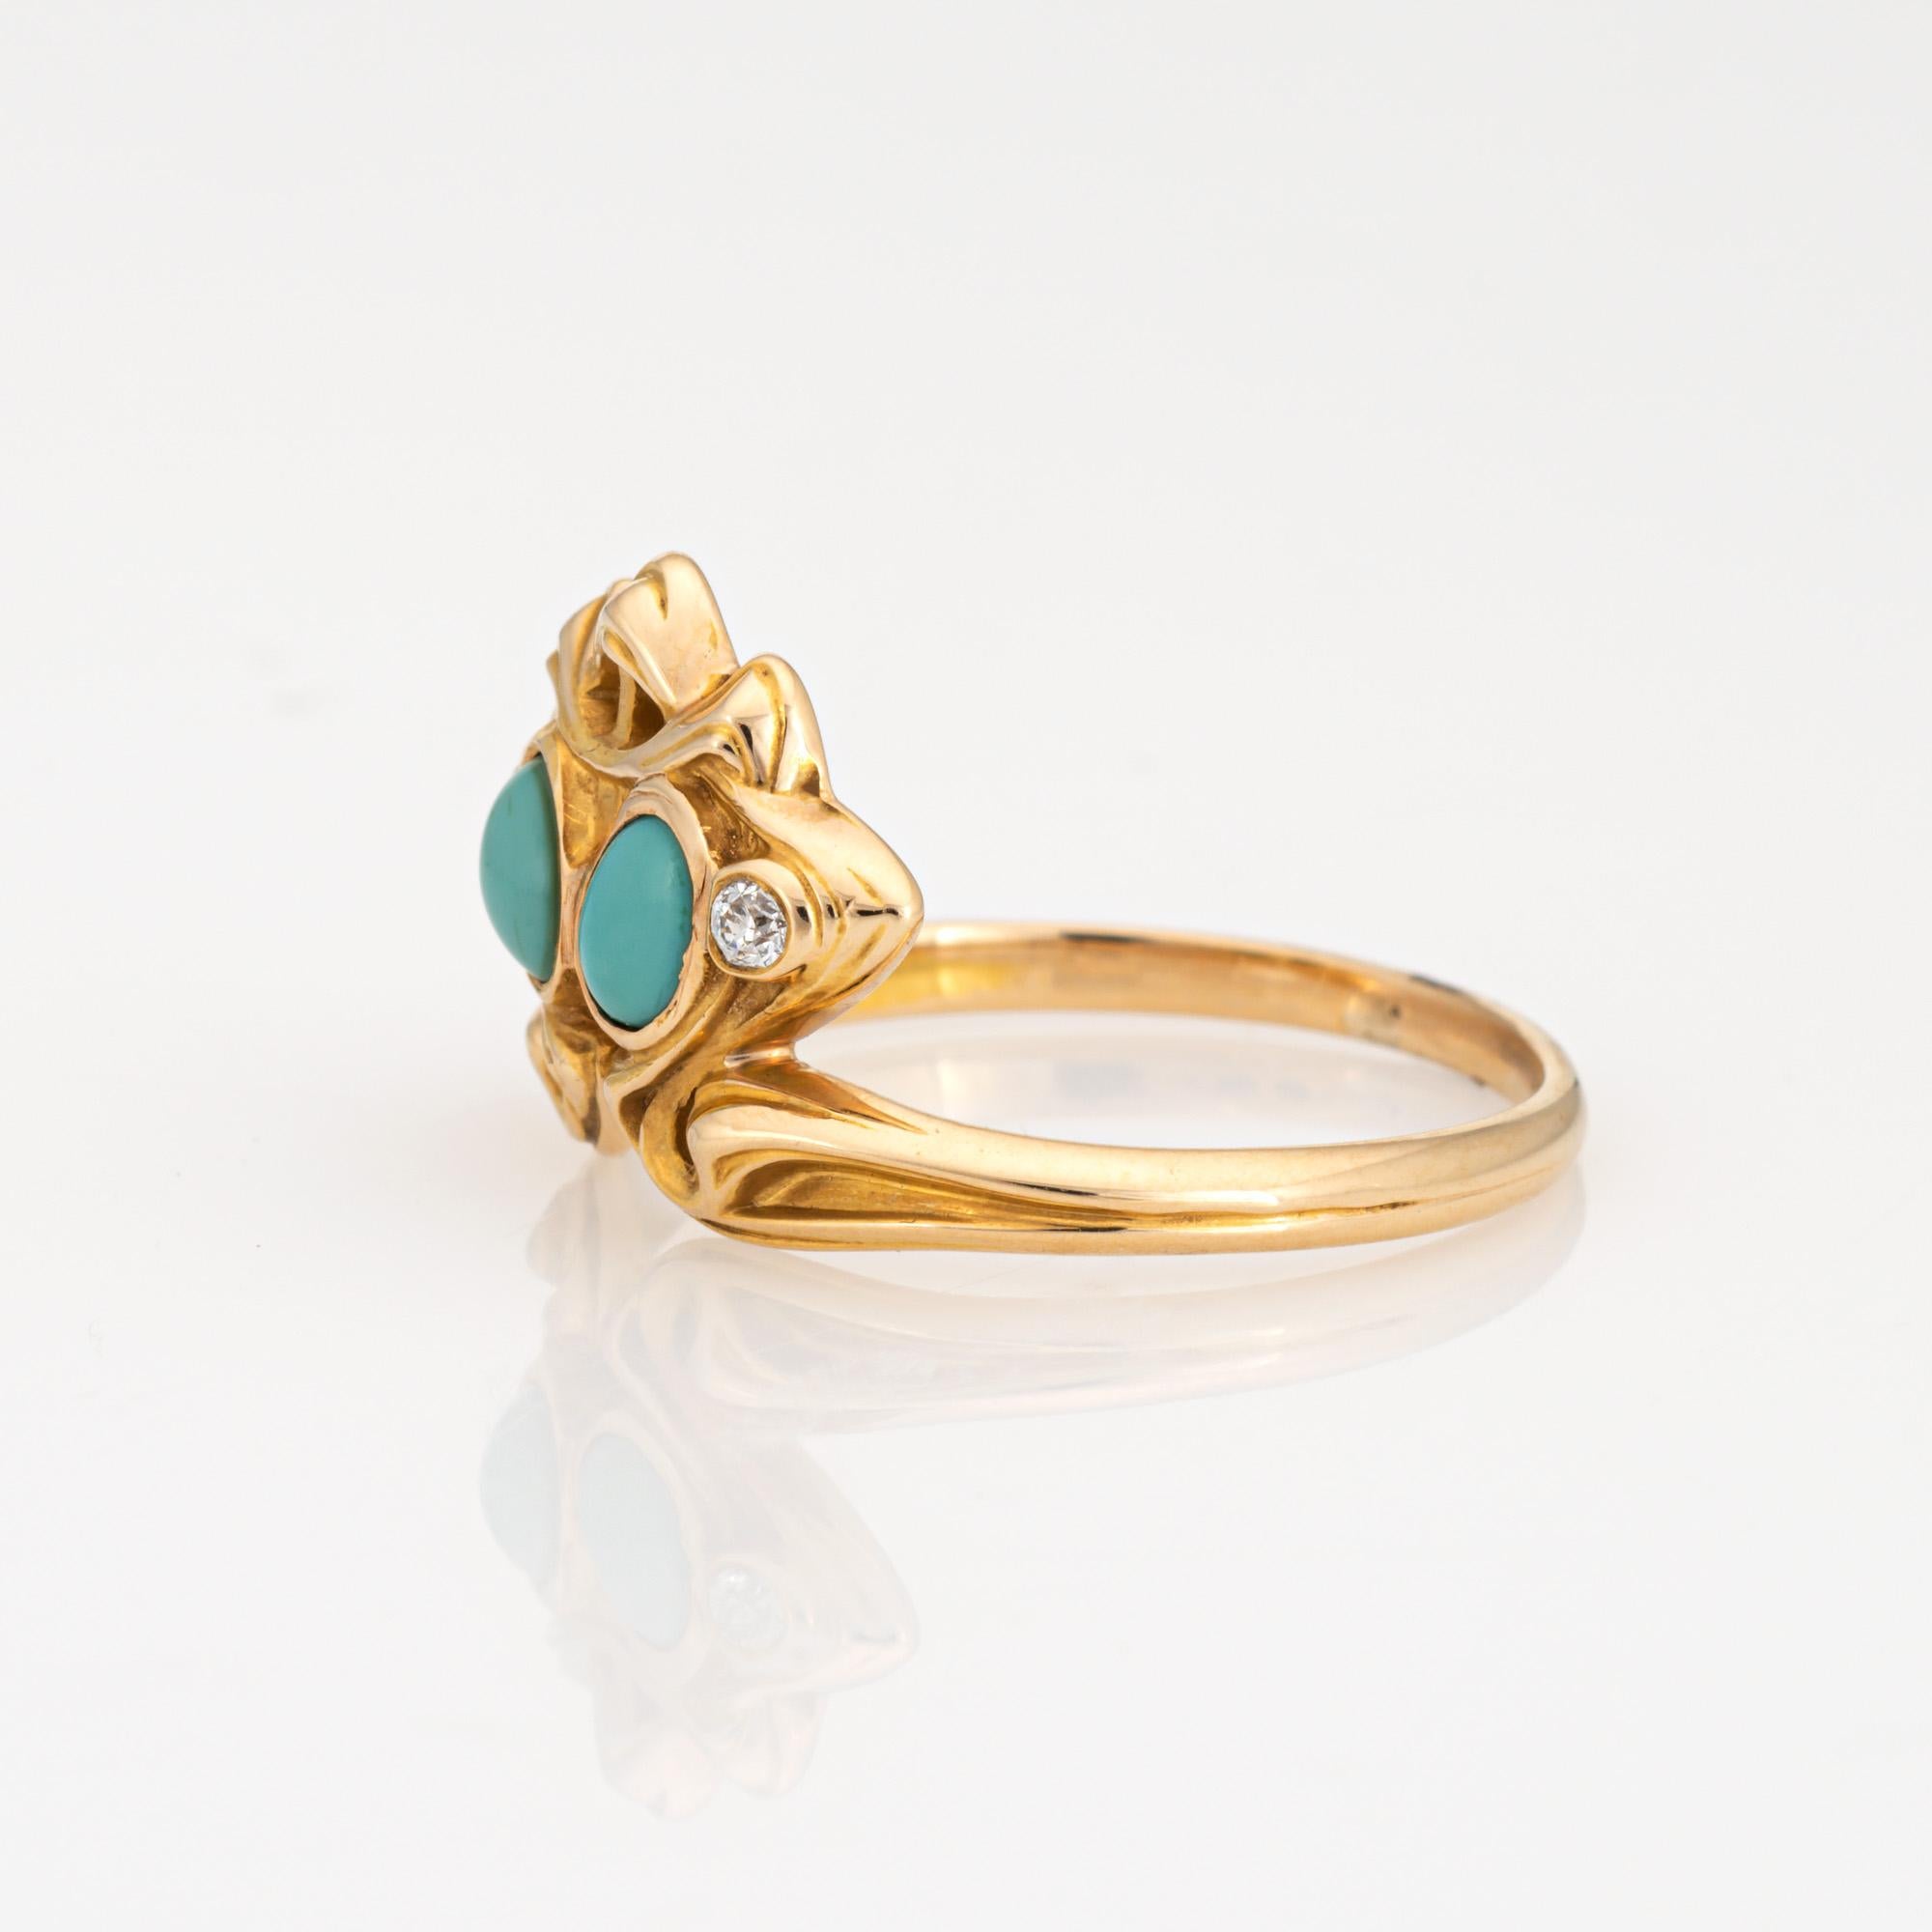 Cabochon Antique Art Nouveau Ring Larter & Sons Turquoise Diamond 14k Yellow Gold Sz 7.5